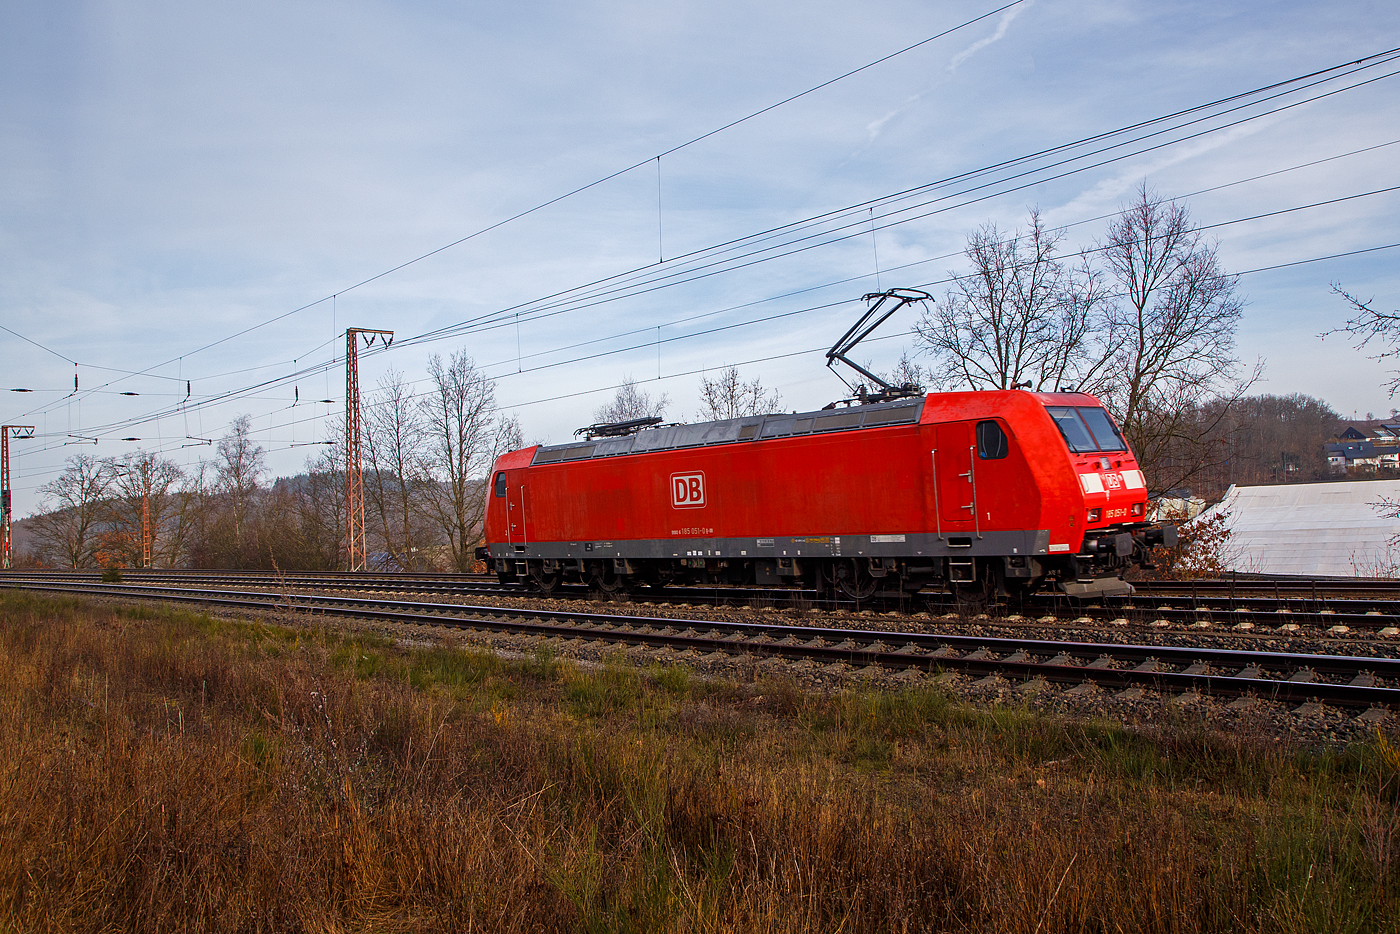 Die 185 052-8 (91 80 6185 052-8 D-DB) der DB Cargo AG fhrt am 22.02.2023 fhrt auf Tfzf (Triebfahrzeugfahrt) durch Rudersdorf (Kr. Siegen) in Richtung Kreuztal.

Die TRAXX F140 AC1 wurde 2001 von der Bombardier in Kassel unter der Fabriknummer 33457 gebaut.